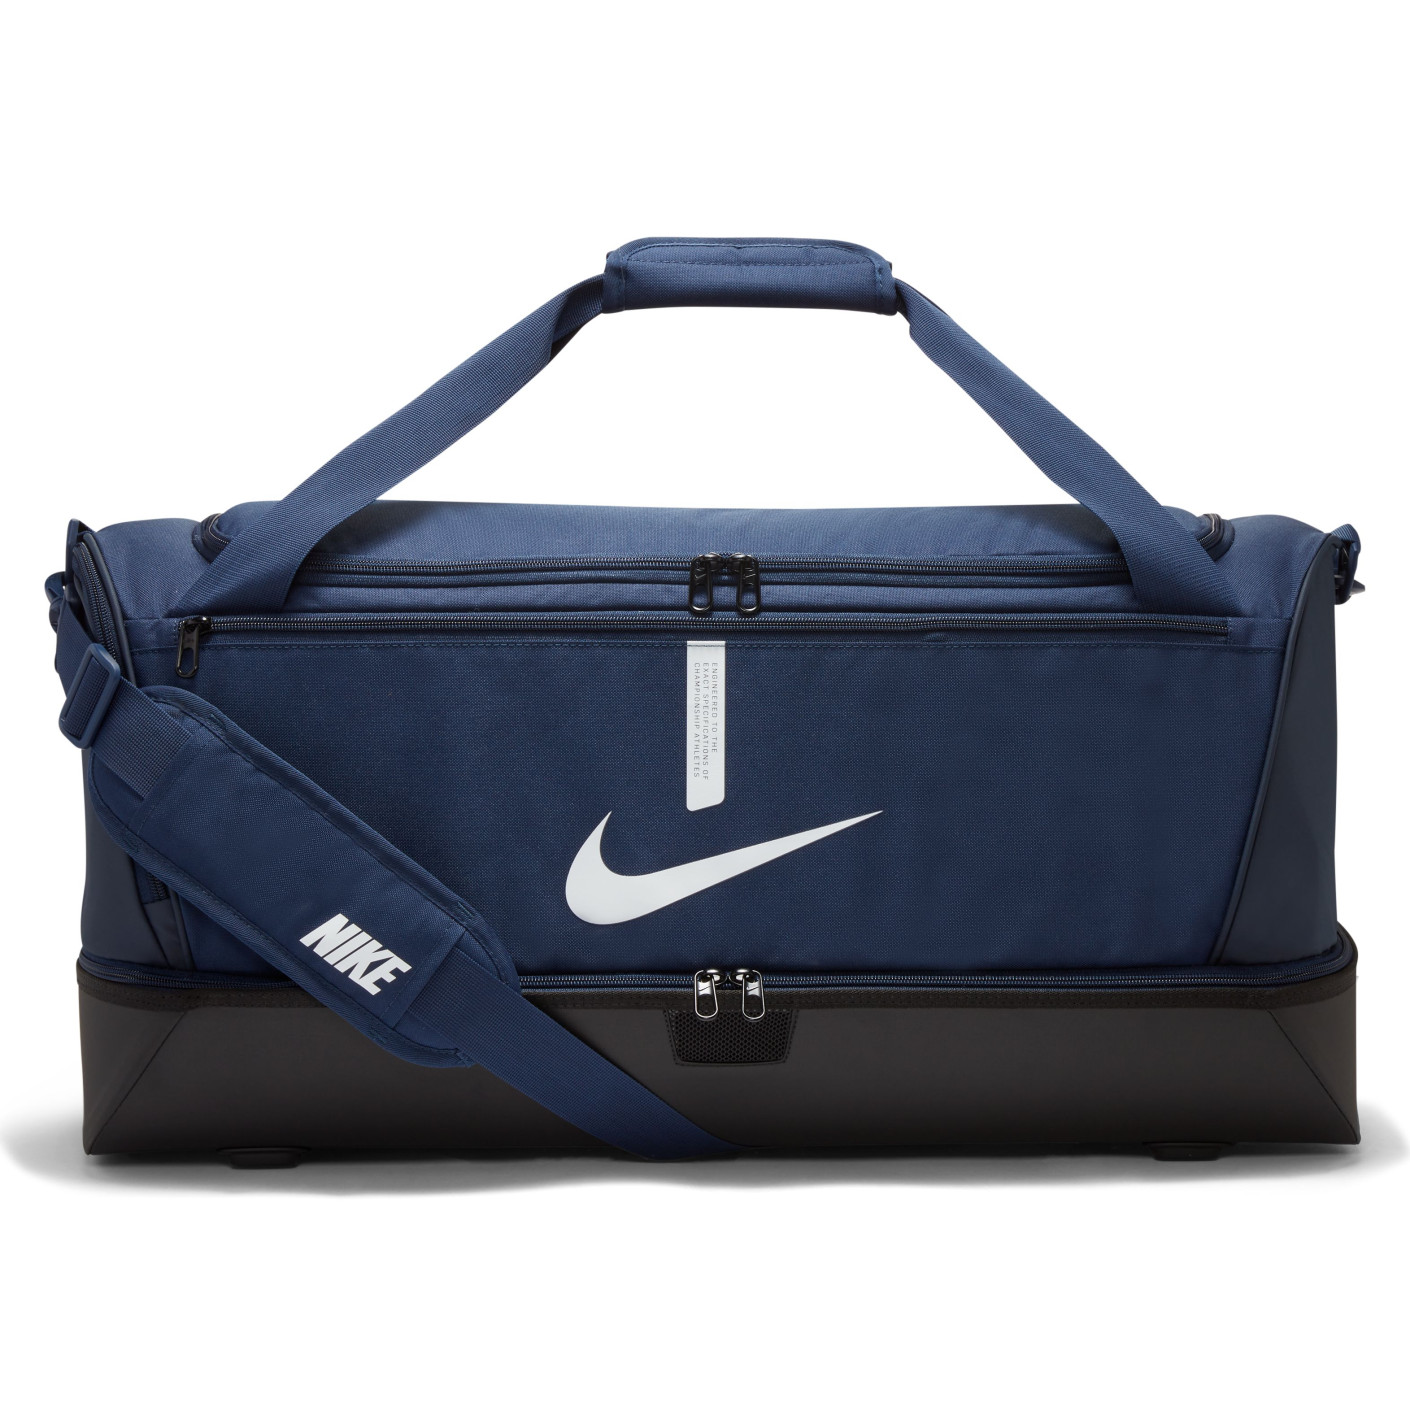 Nike Academy 21 Team Sac de Football Large Compartiment à Chaussures Bleu Foncé